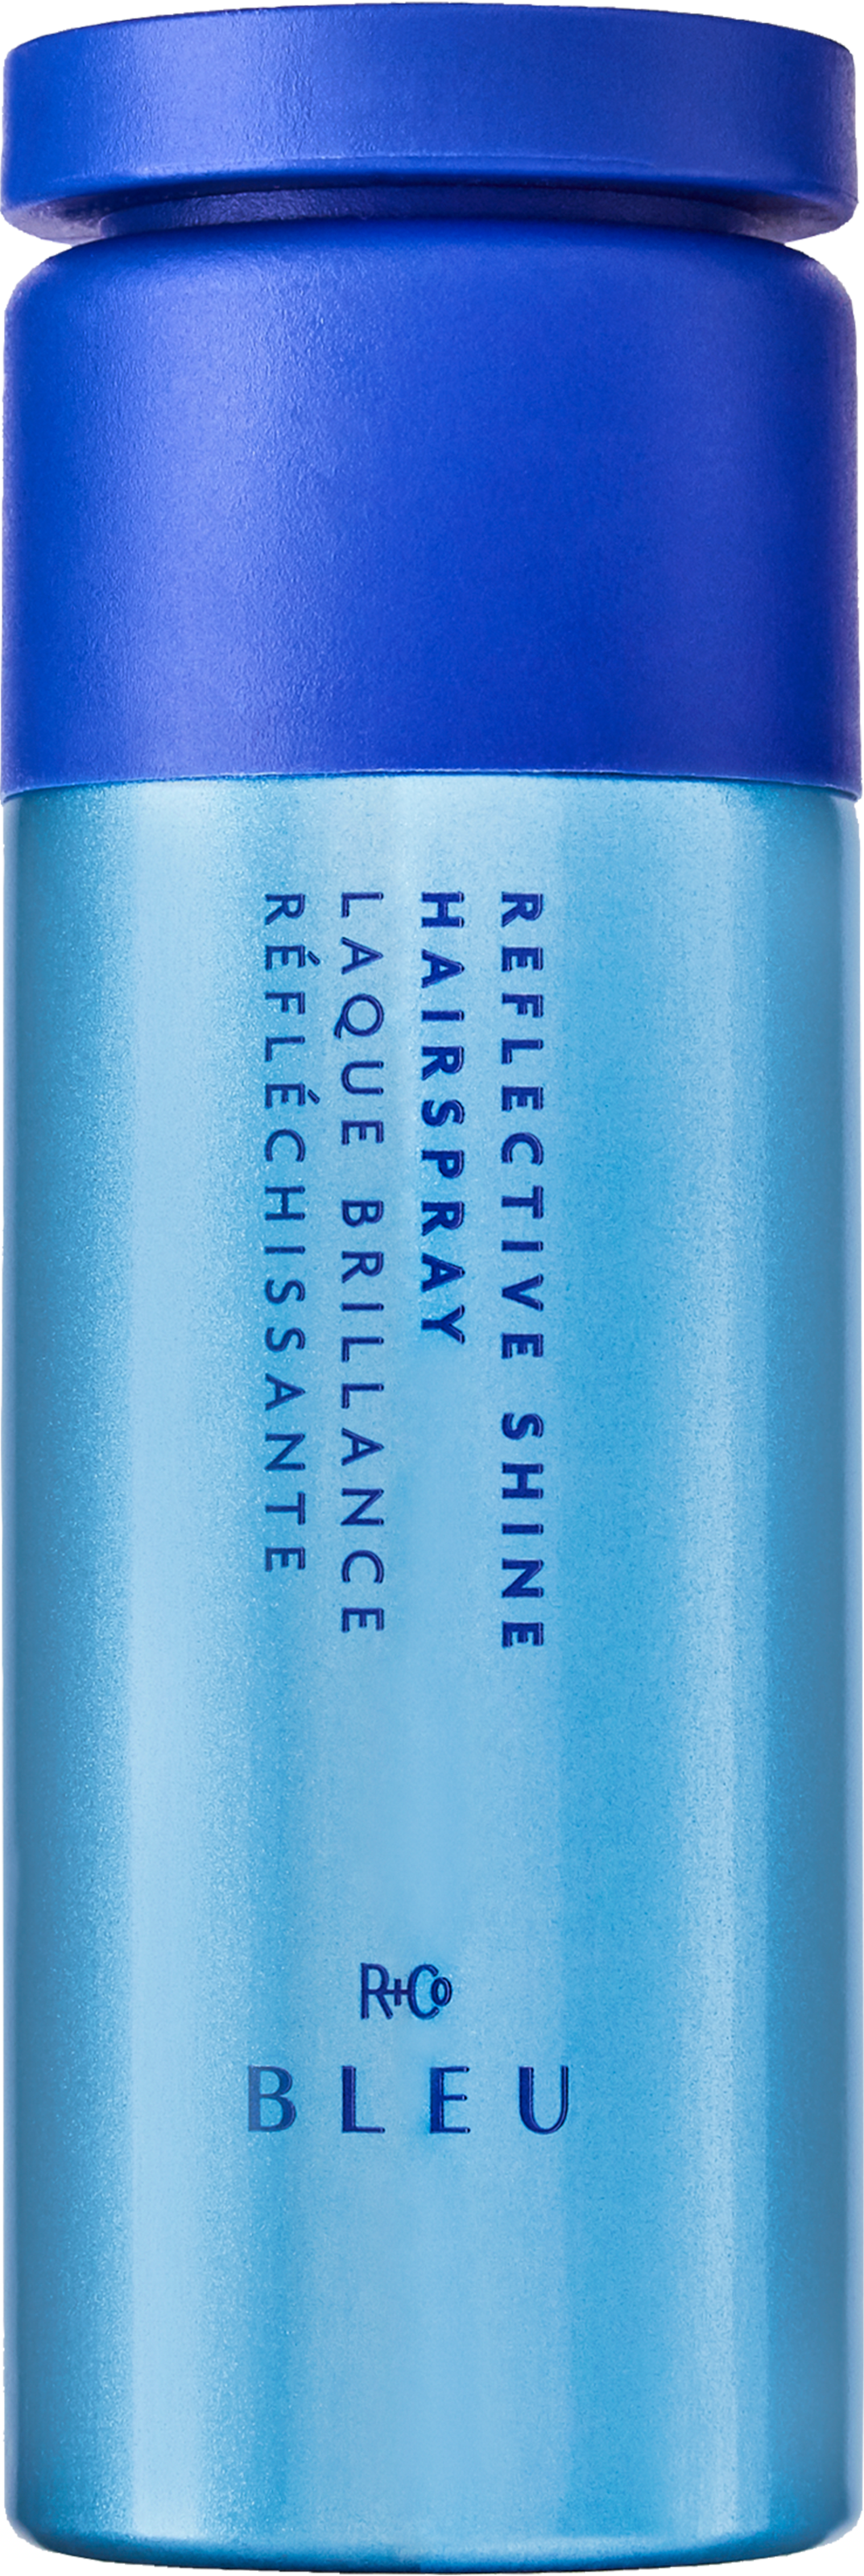 R+Co Bleu Reflective Shine Hairspray